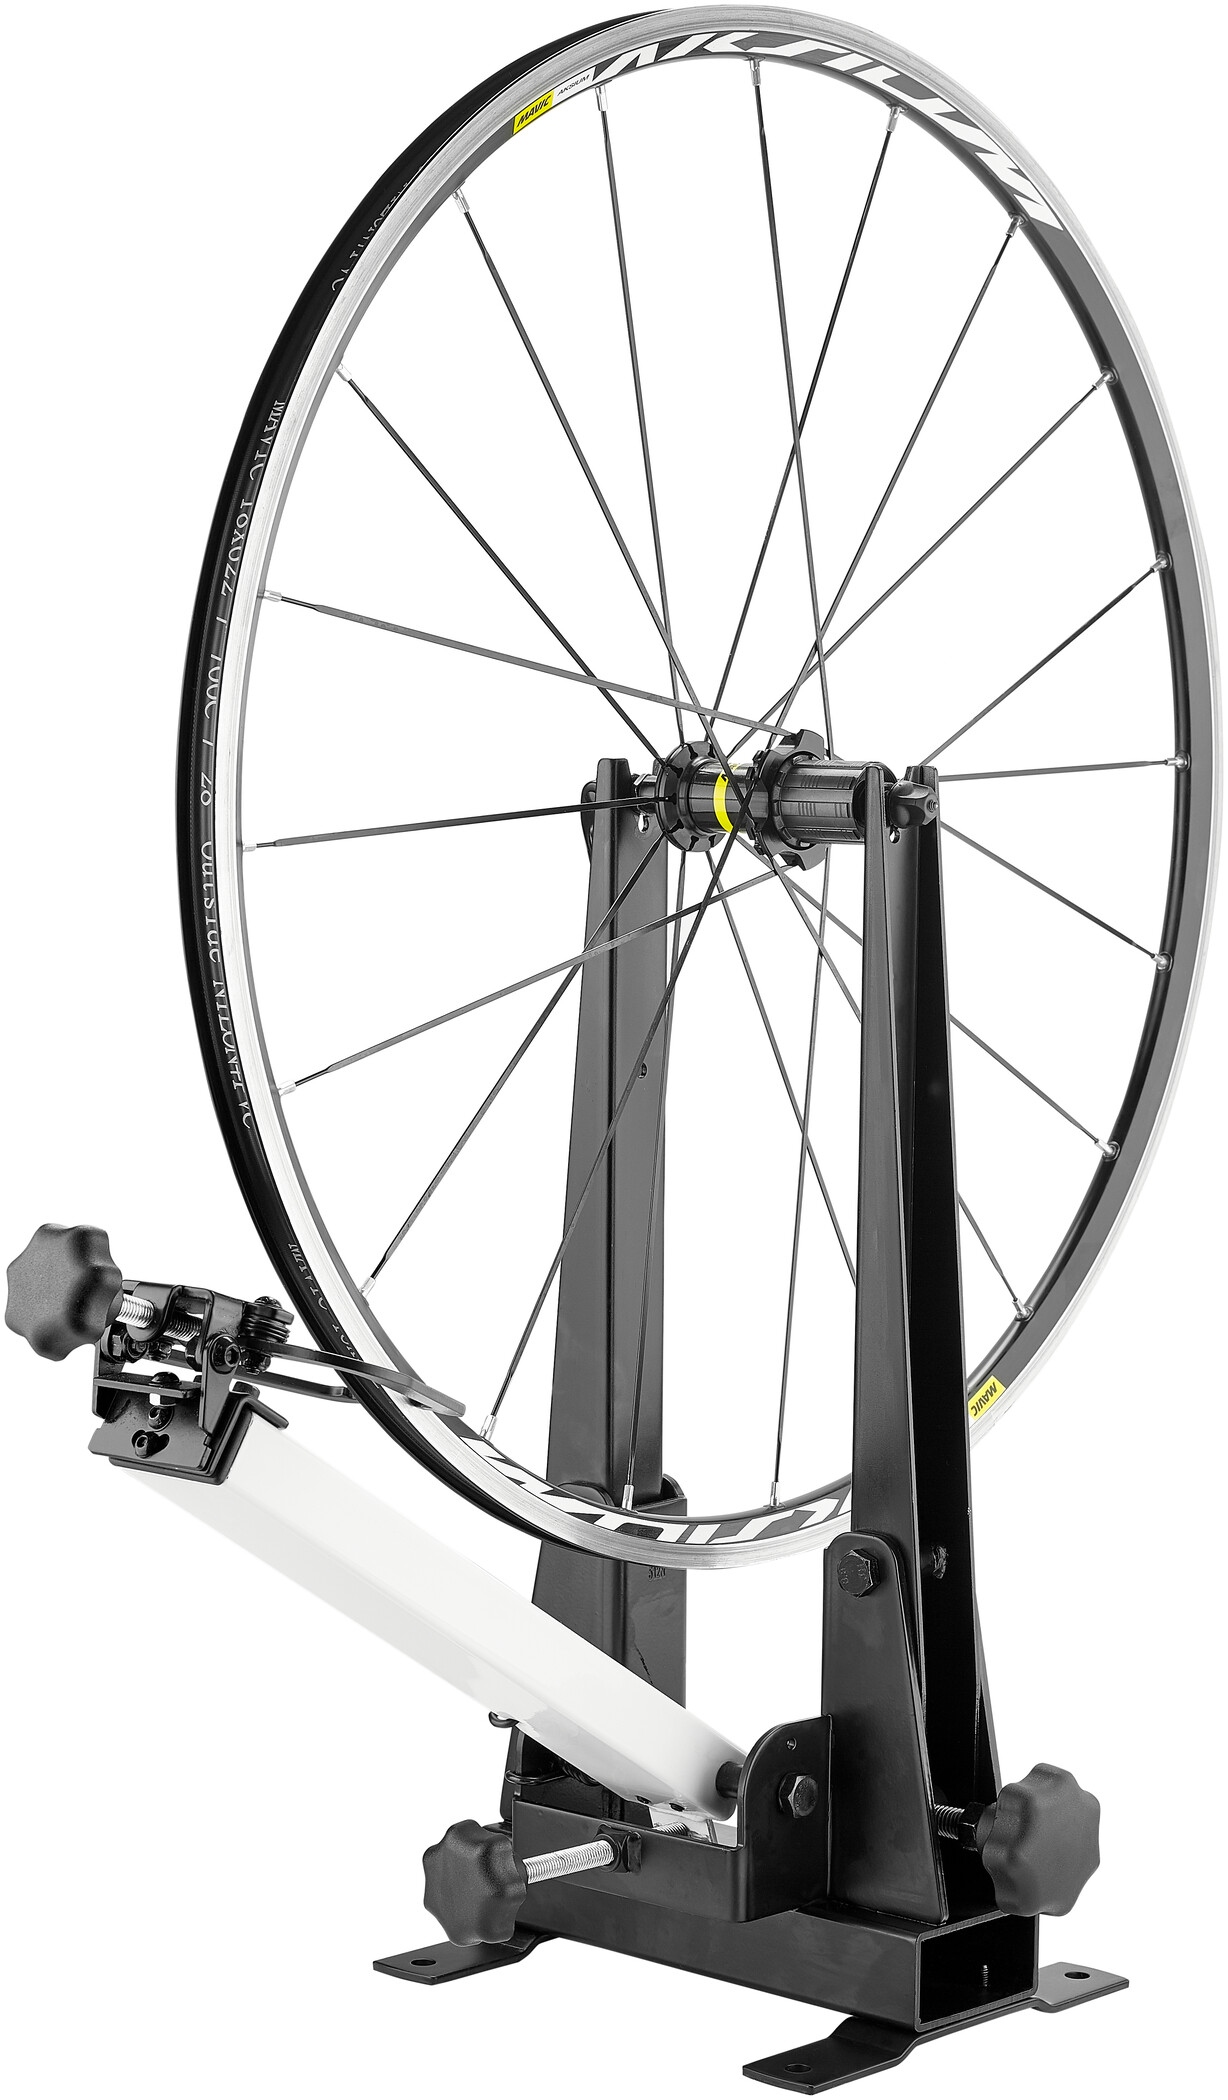 DE Zentrierständer Fahrrad Zentrier Ständer Wheel Truing Stand für 16"-29" Räder 